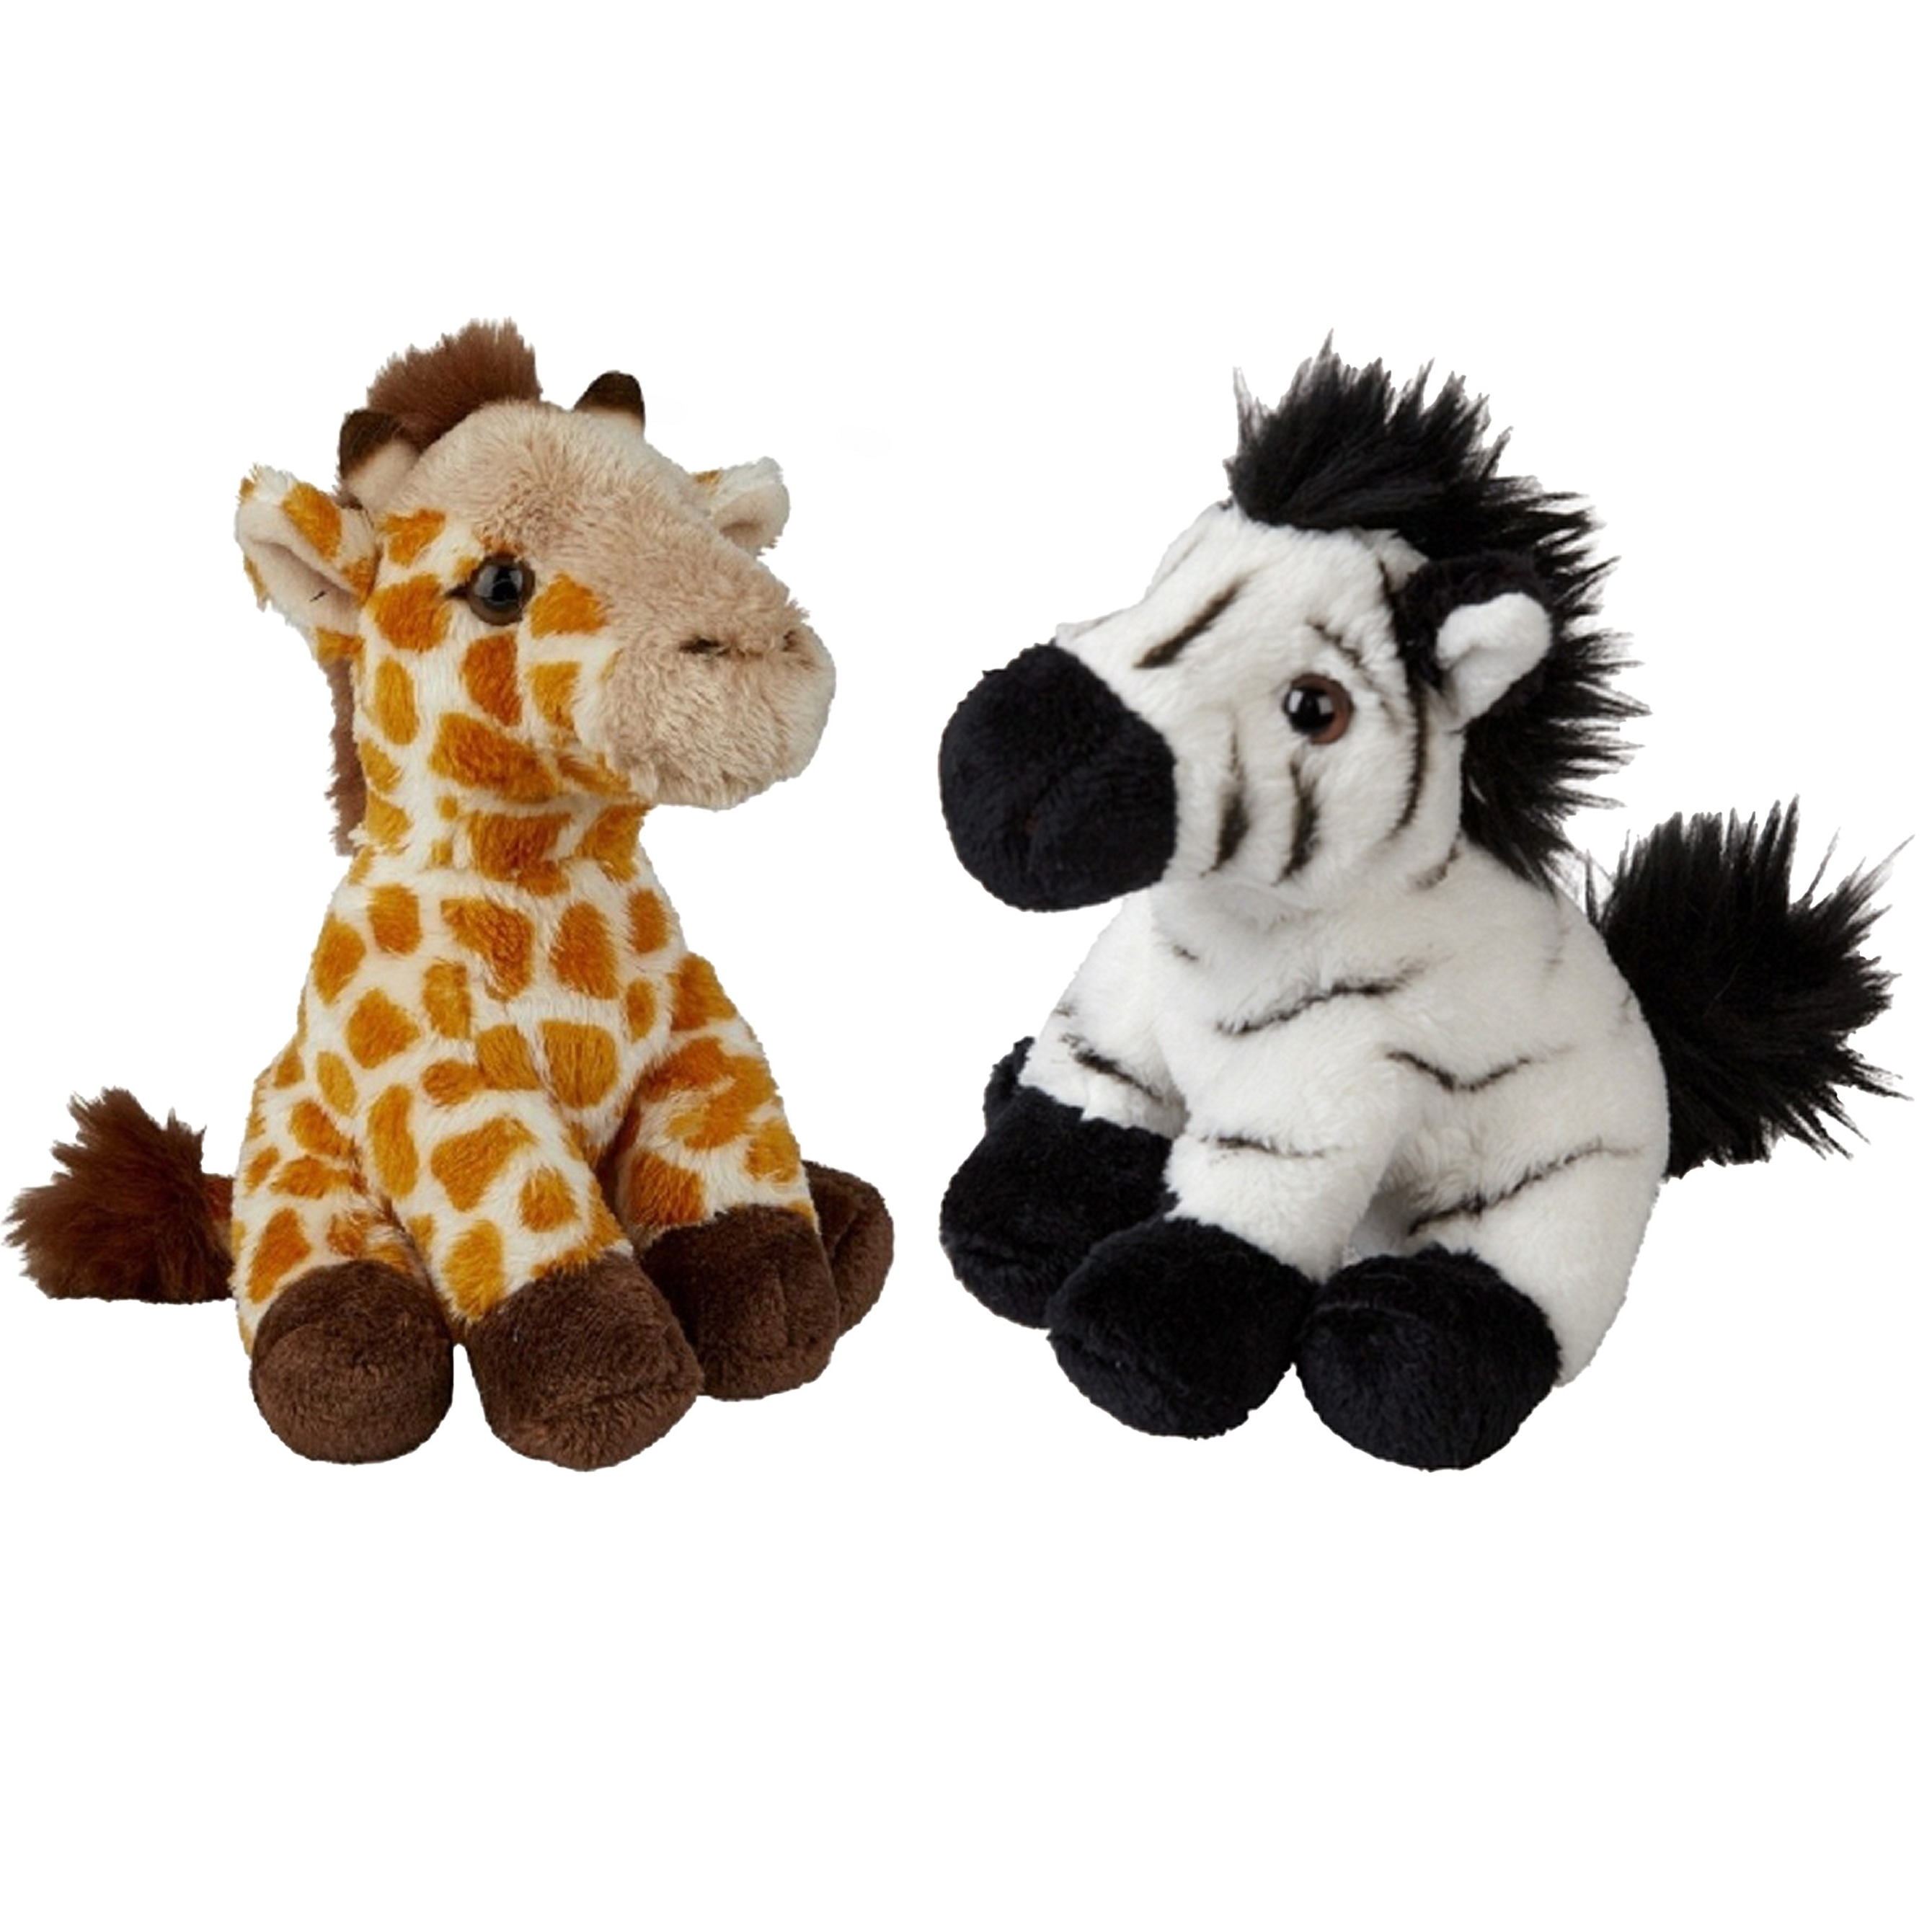 Safari dieren serie pluche knuffels 2x stuks Zebra en Giraffe van 15 cm